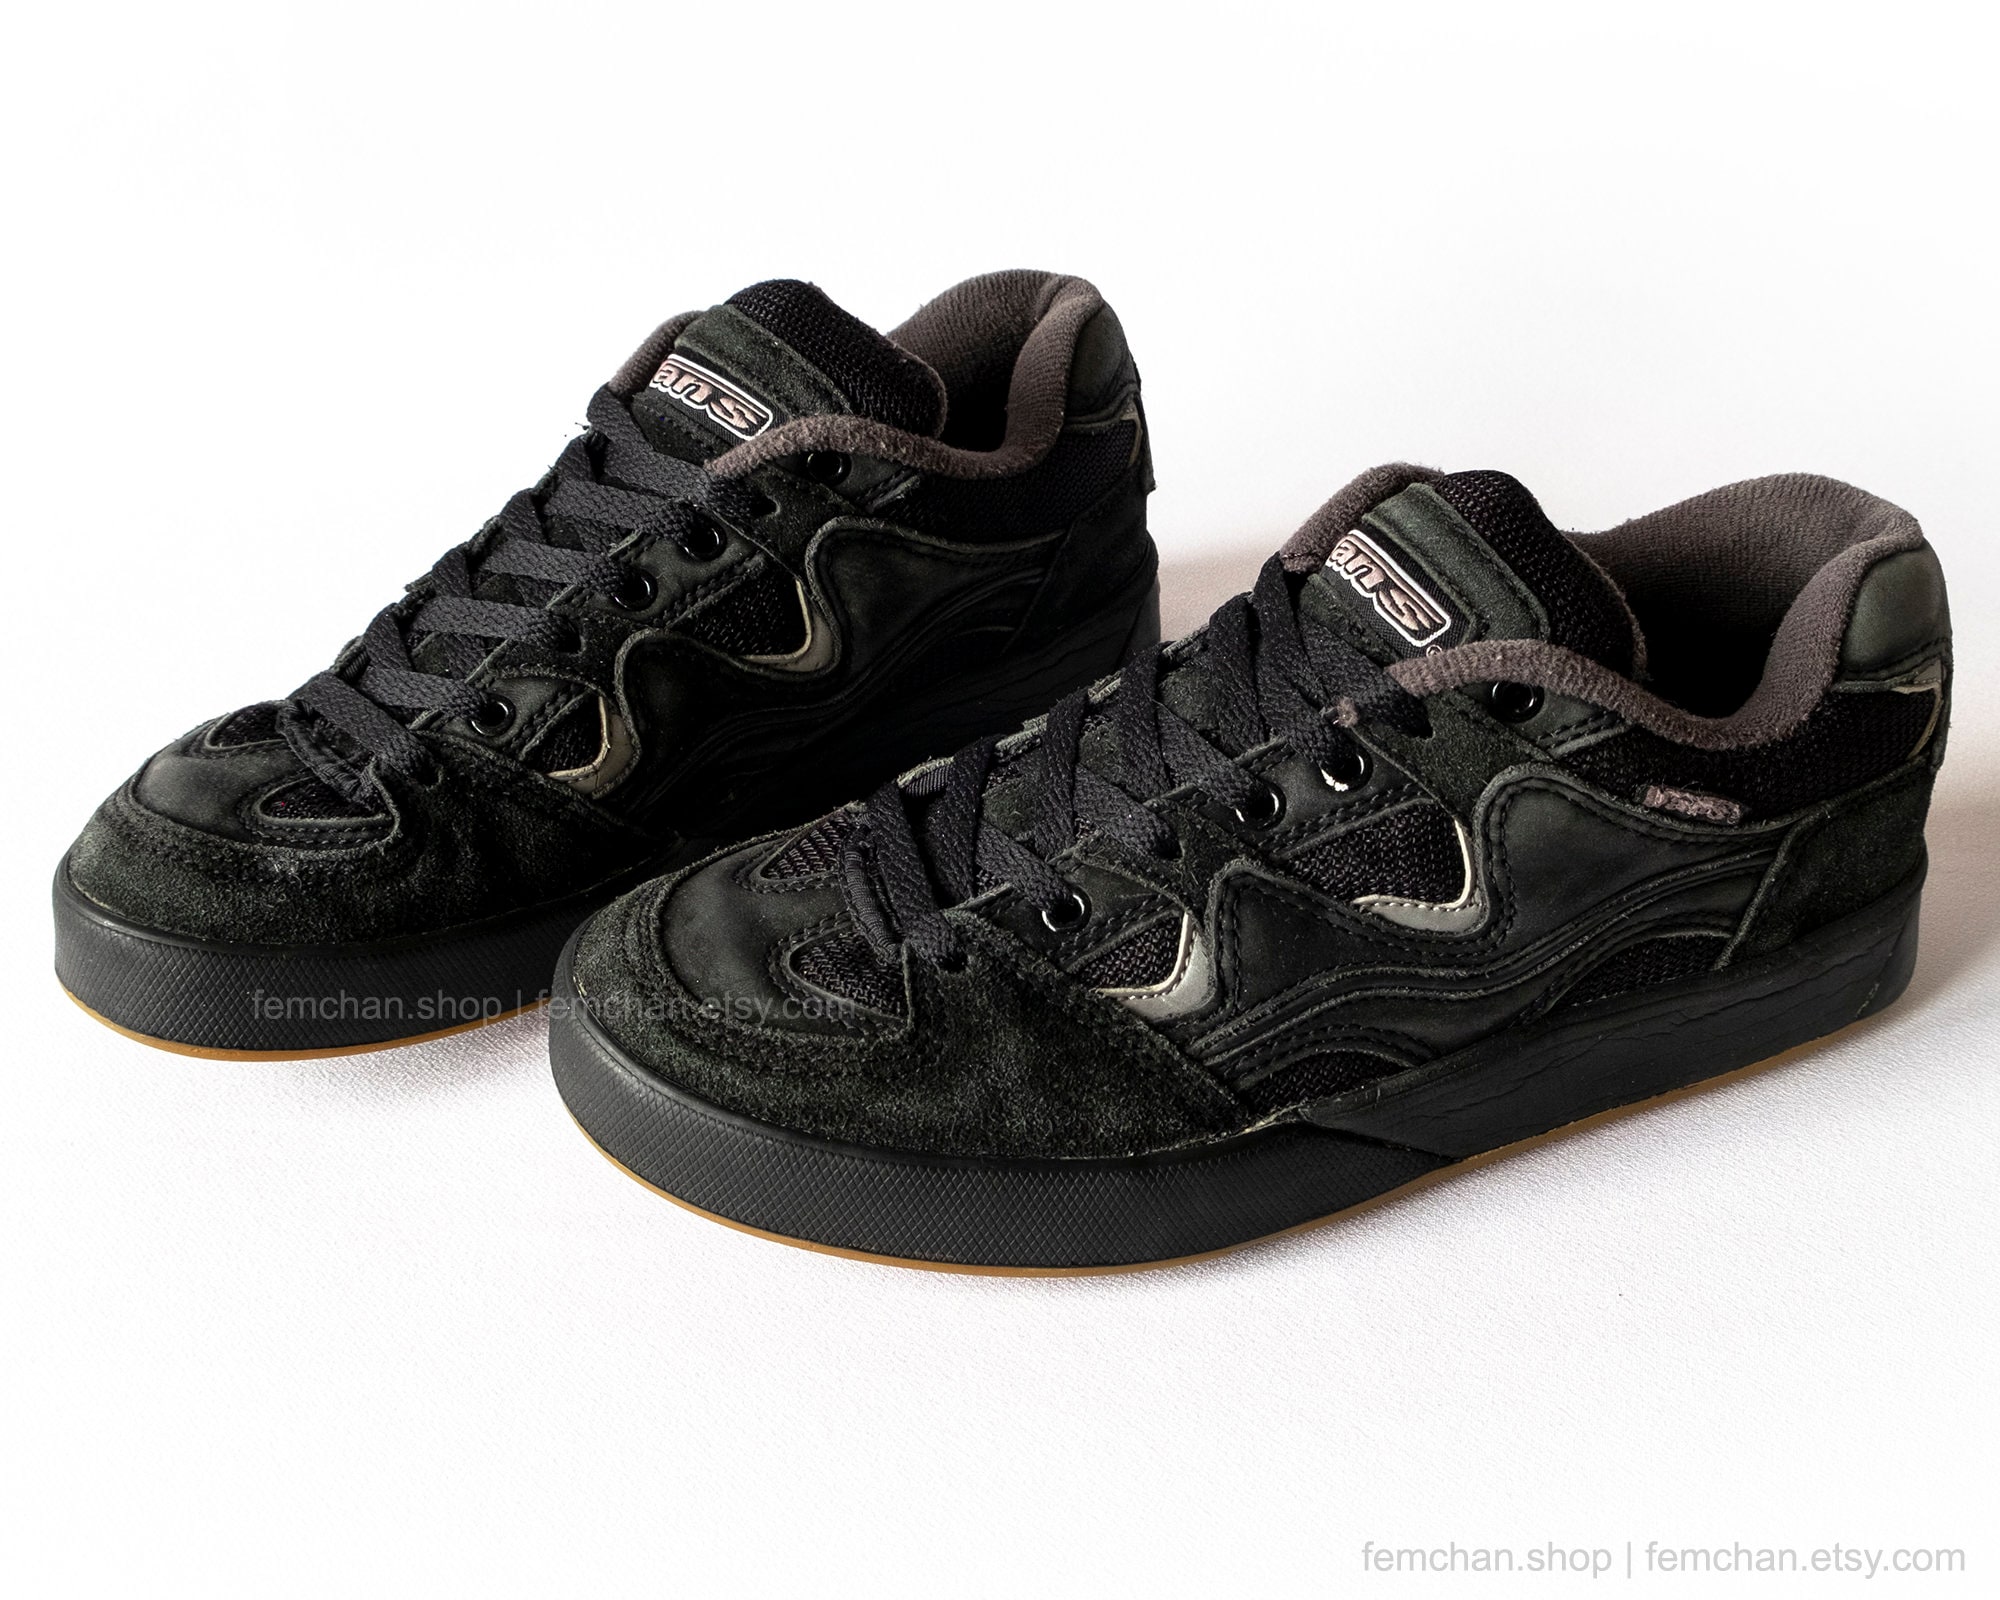 Vans Steve Caballero Dragon Skate Shoes Black Sneakers - Etsy UK